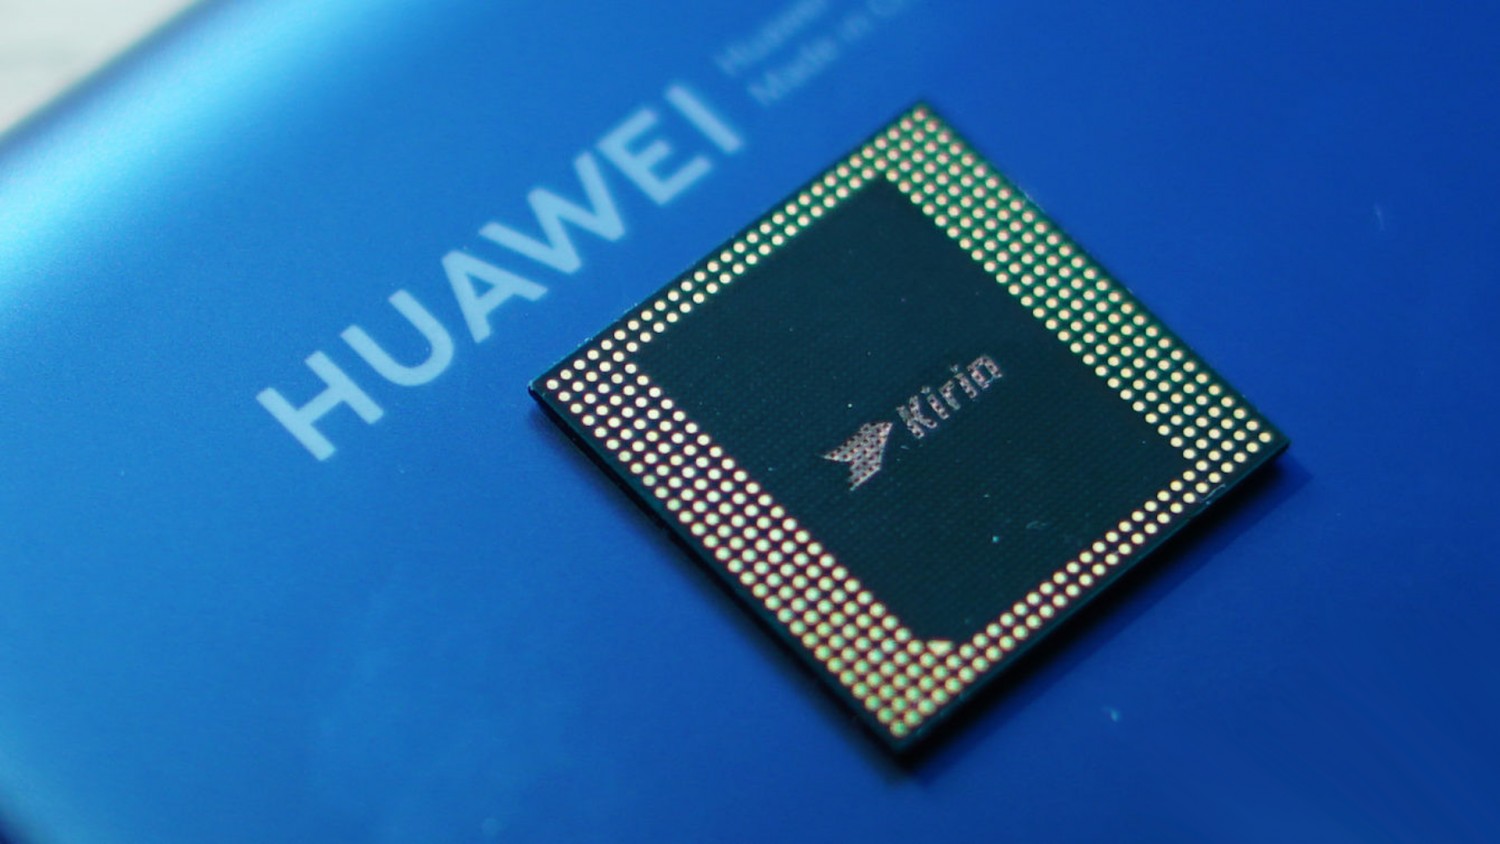 В Huawei Mate 40 поставят чипсет Kirin 9000. Анонс может состояться в сентябре